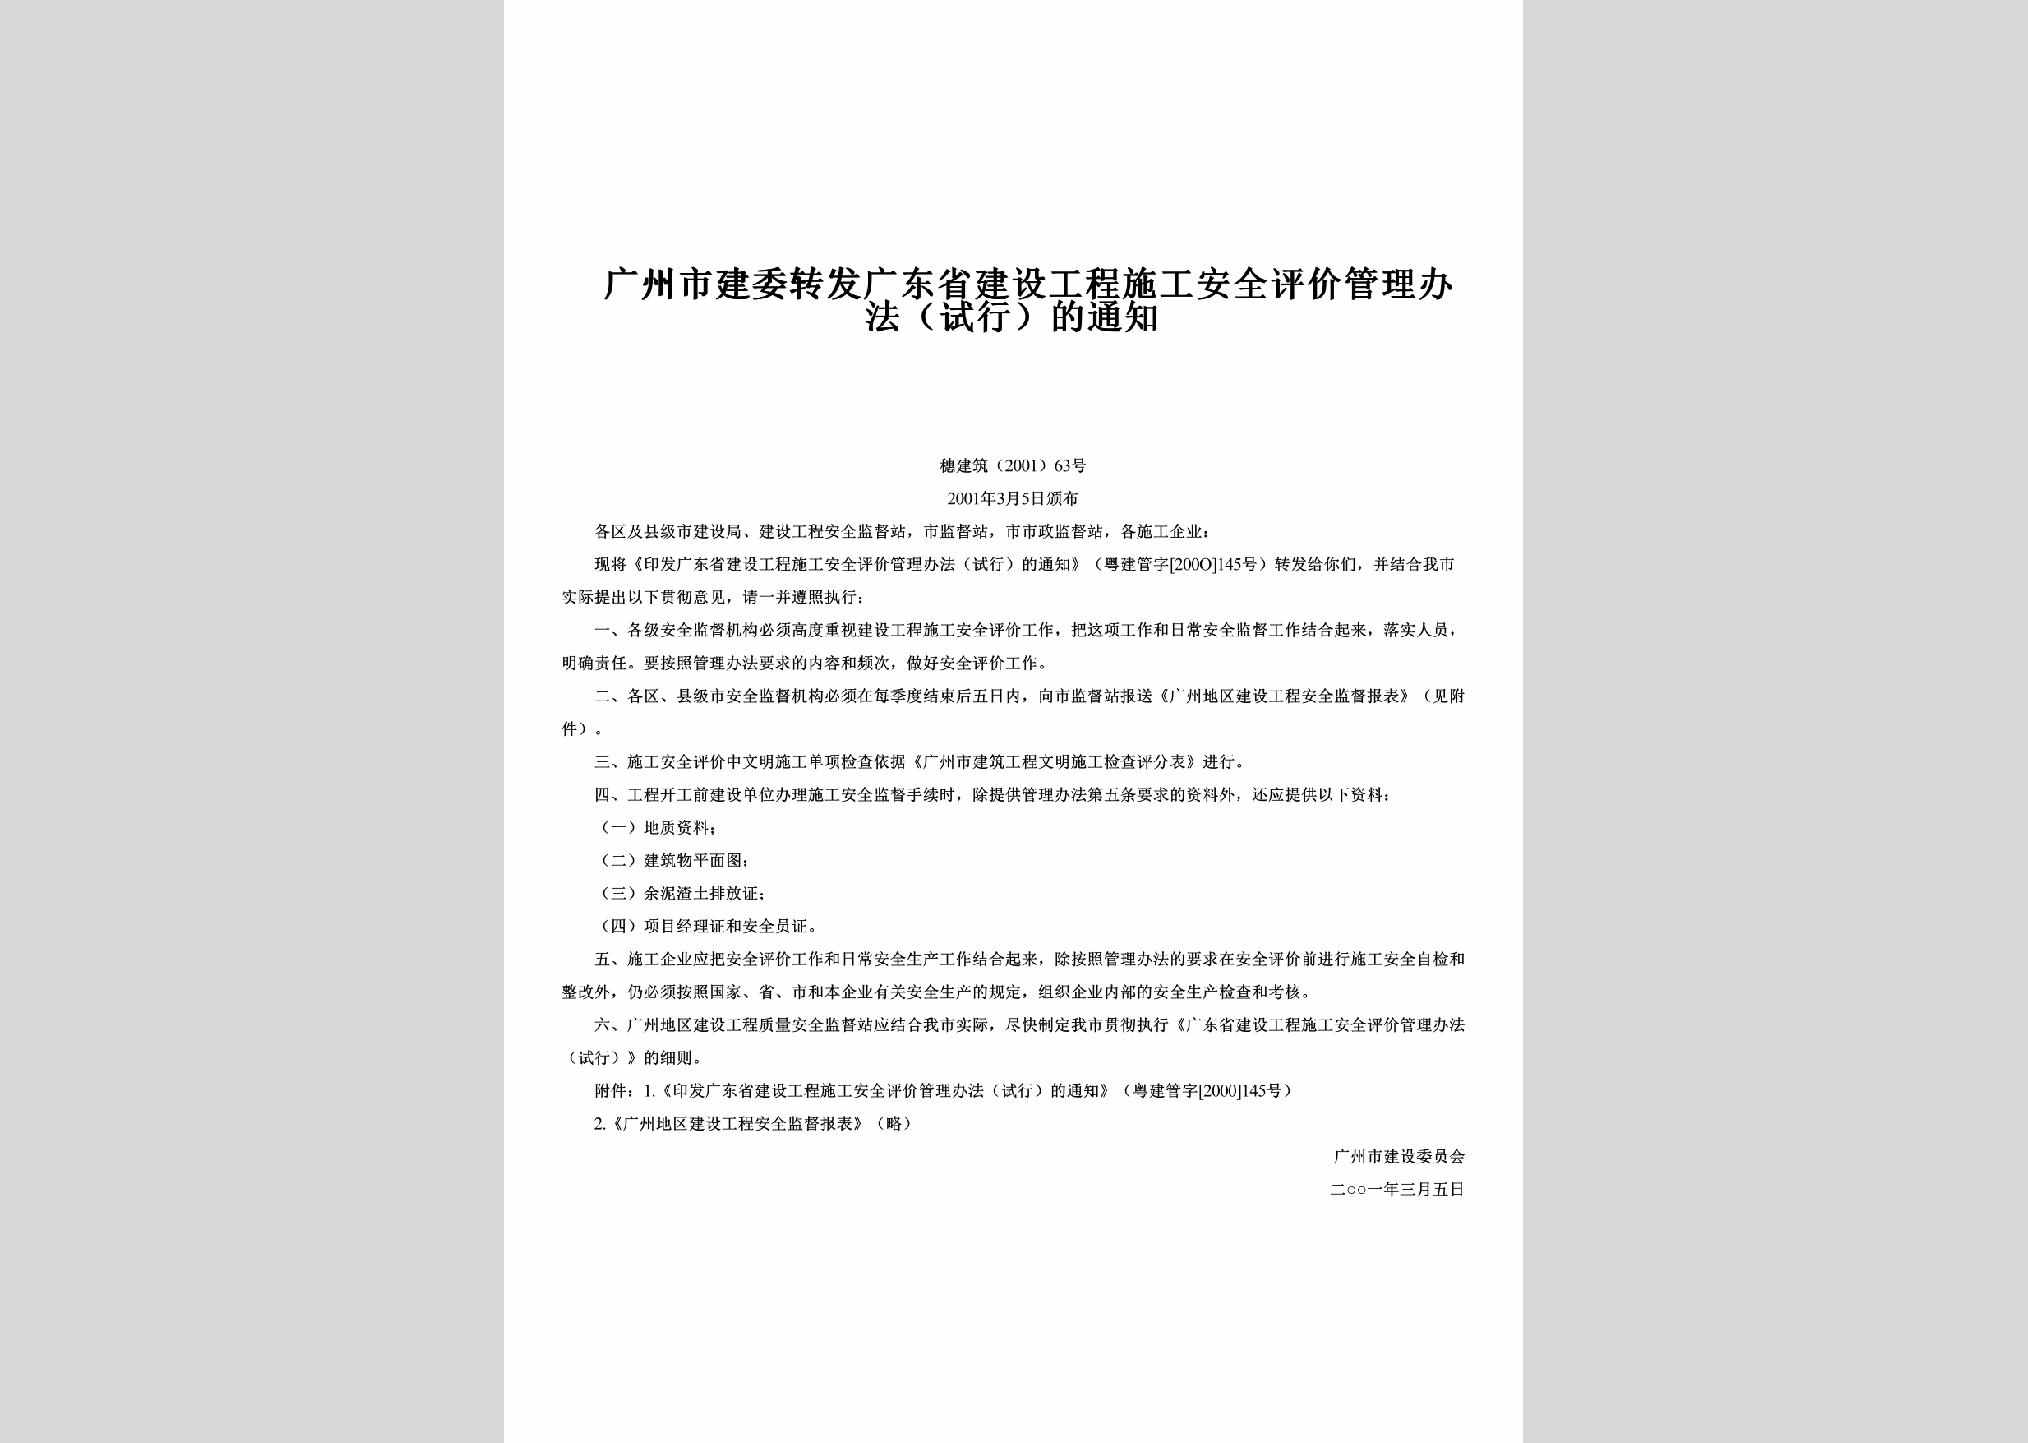 穗建筑[2001]63号：转发广东省建设工程施工安全评价管理办法（试行）的通知